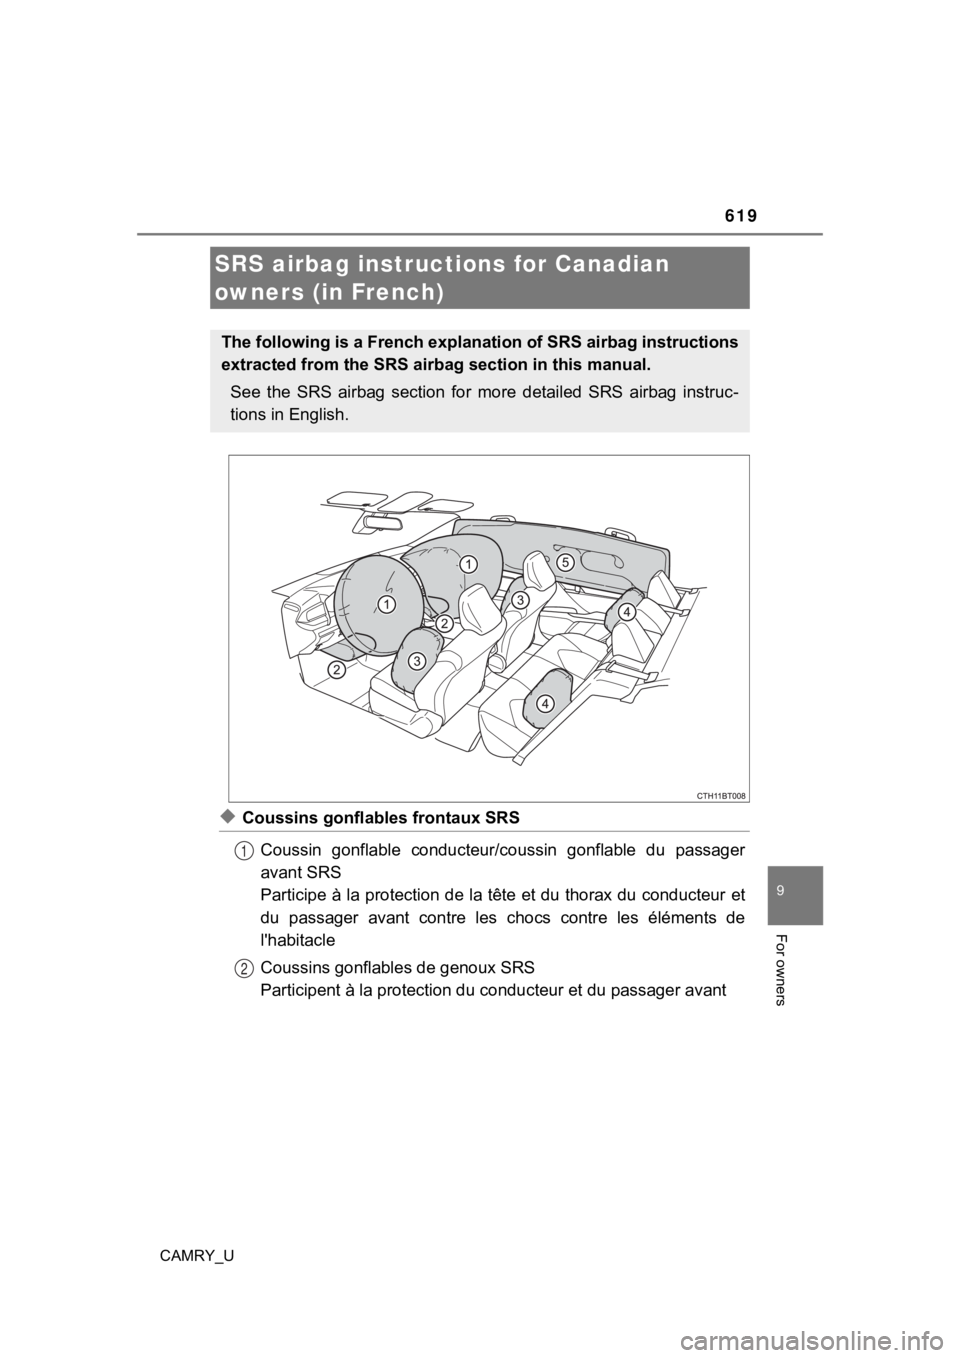 TOYOTA CAMRY 2023  Owners Manual 619
9
For owners
CAMRY_U
◆Coussins gonflables frontaux SRSCoussin  gonflable  conducteur/c oussin  gonflable  du  passager
avant SRS
Participe à la protection de la tête et du thorax du conducteur